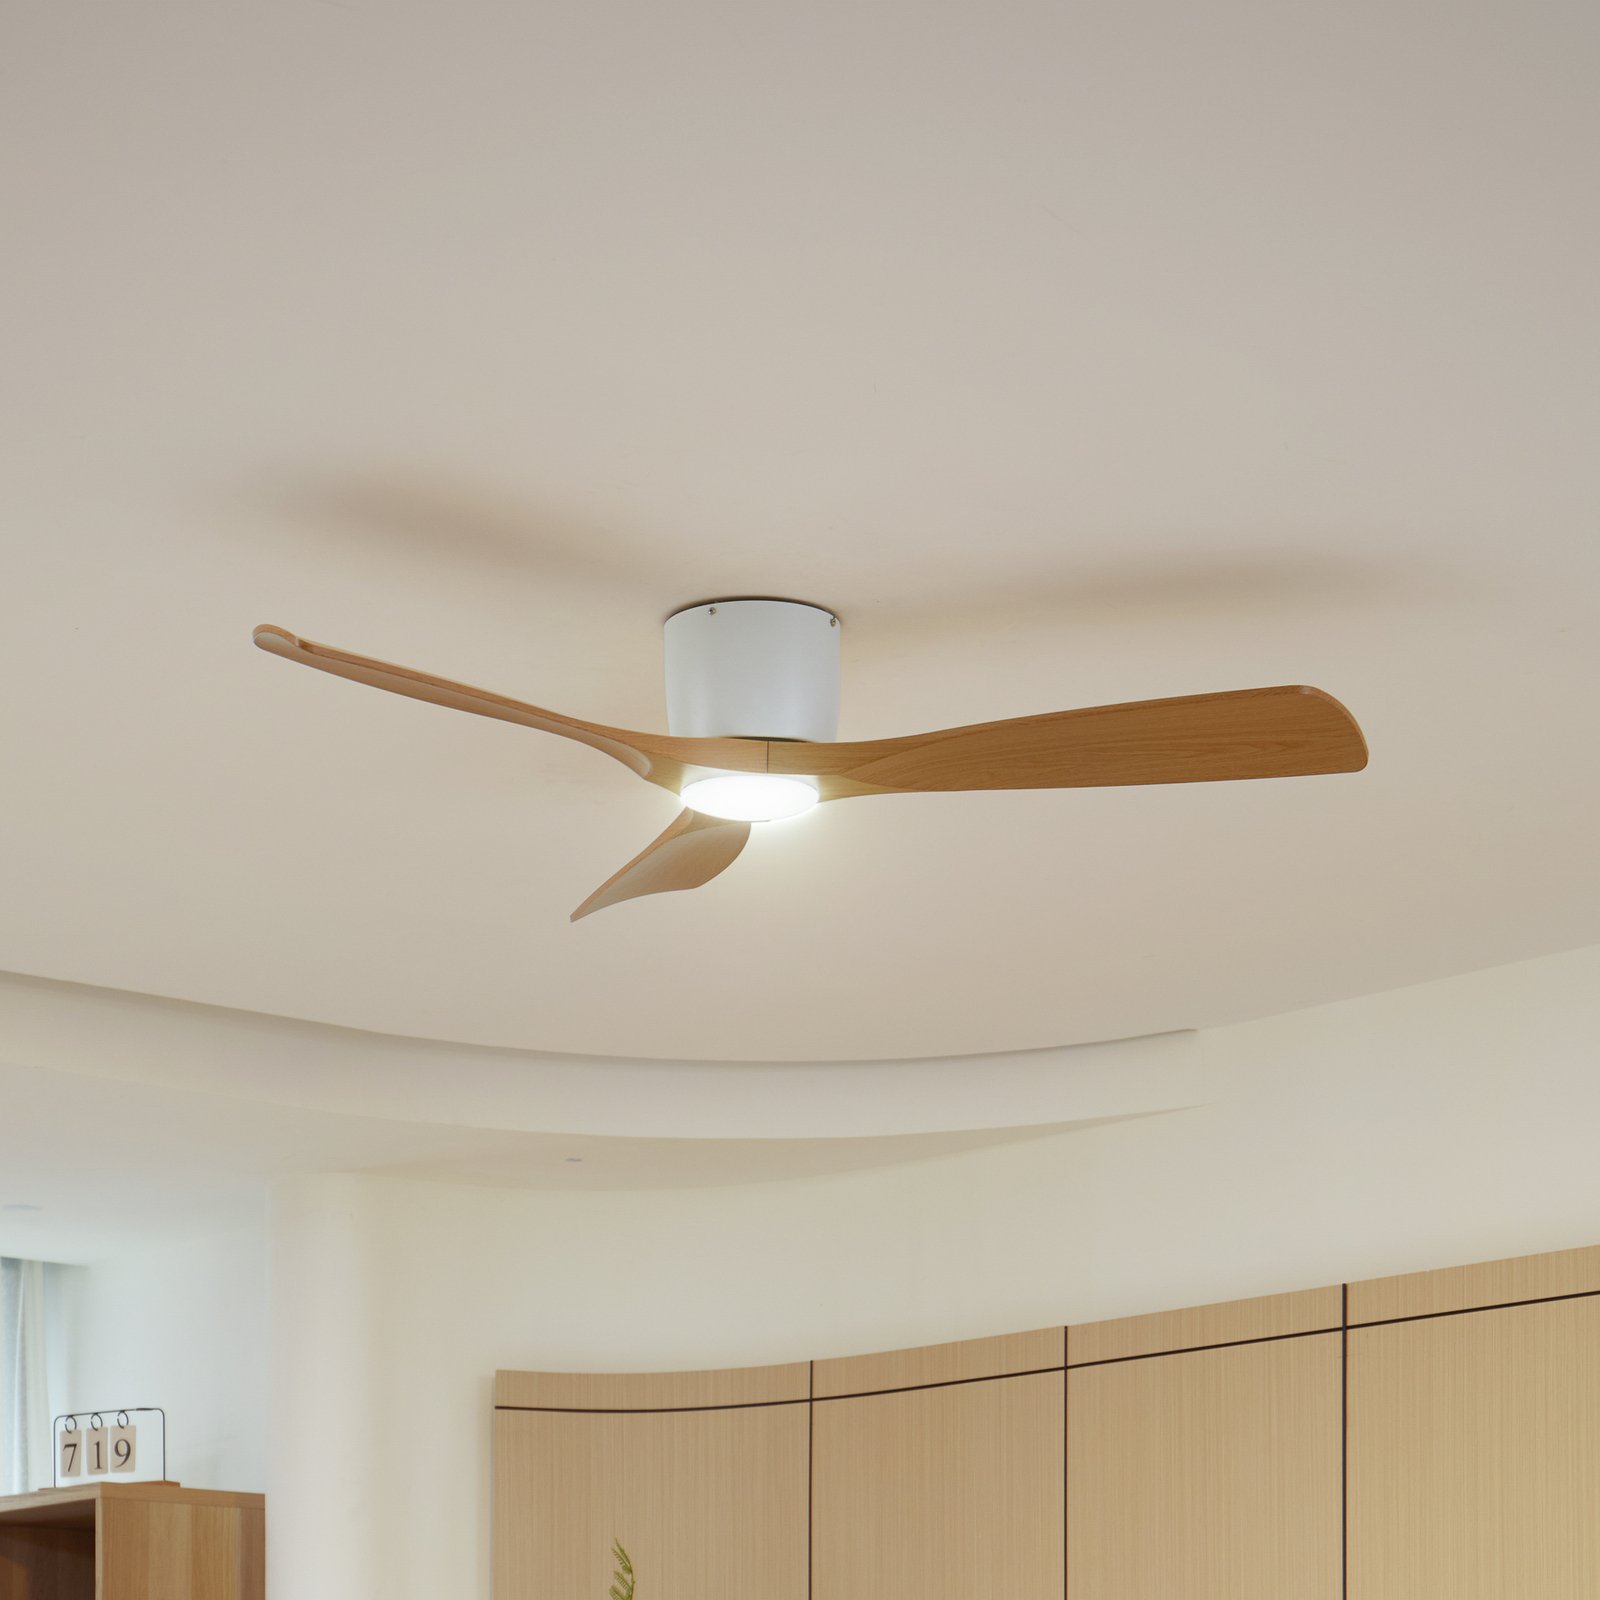 Lucande LED ceiling fan Moneno white/wood-coloured DC quiet